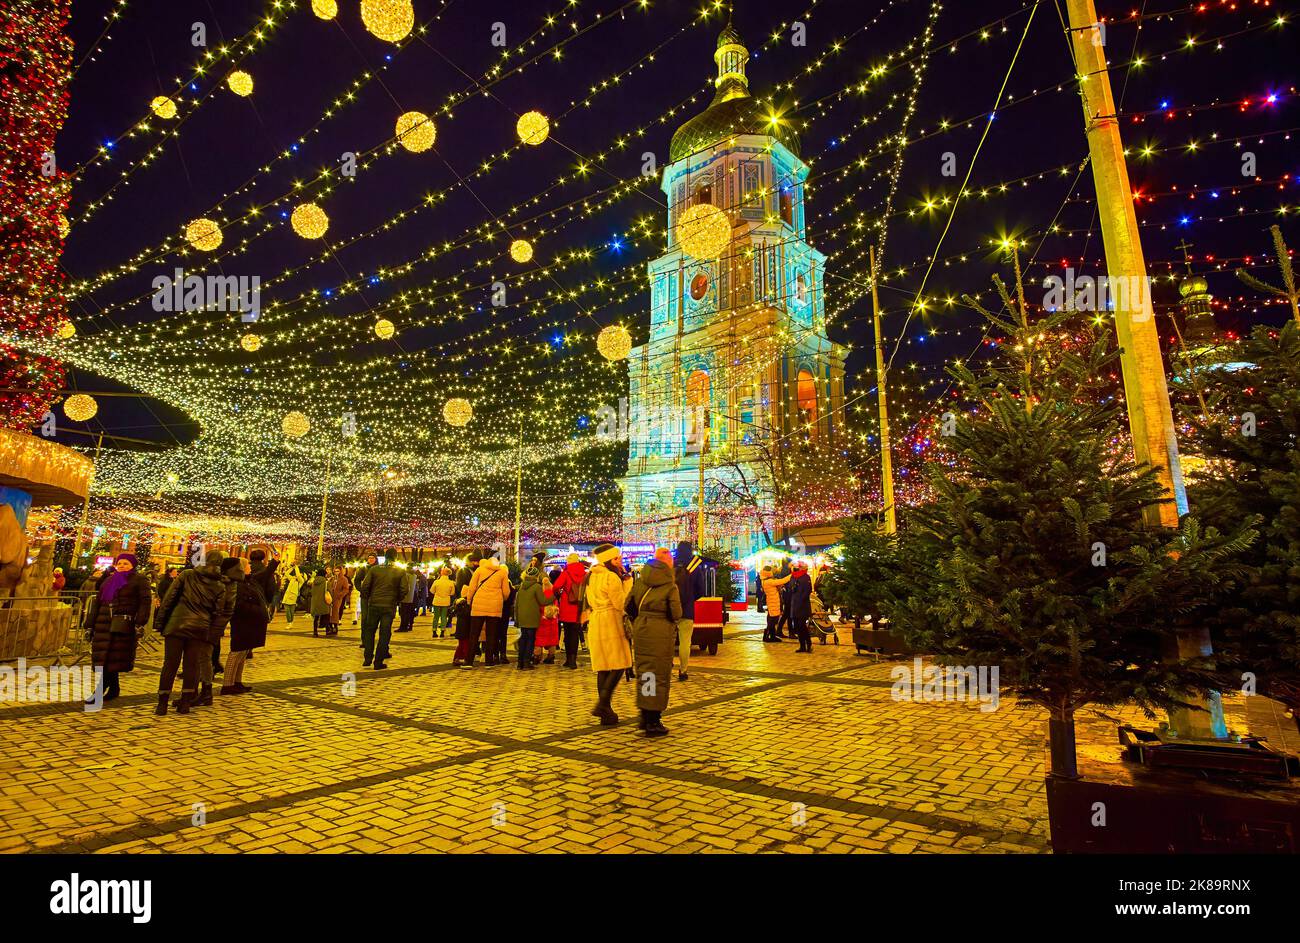 KIEV, UCRANIA - 28 DE DICIEMBRE de 2021: La Plaza de Sofía, decorada con el árbol de Navidad, guirnaldas y luces con el campanario alto de la Catedral de Santa Sofía en ba Foto de stock